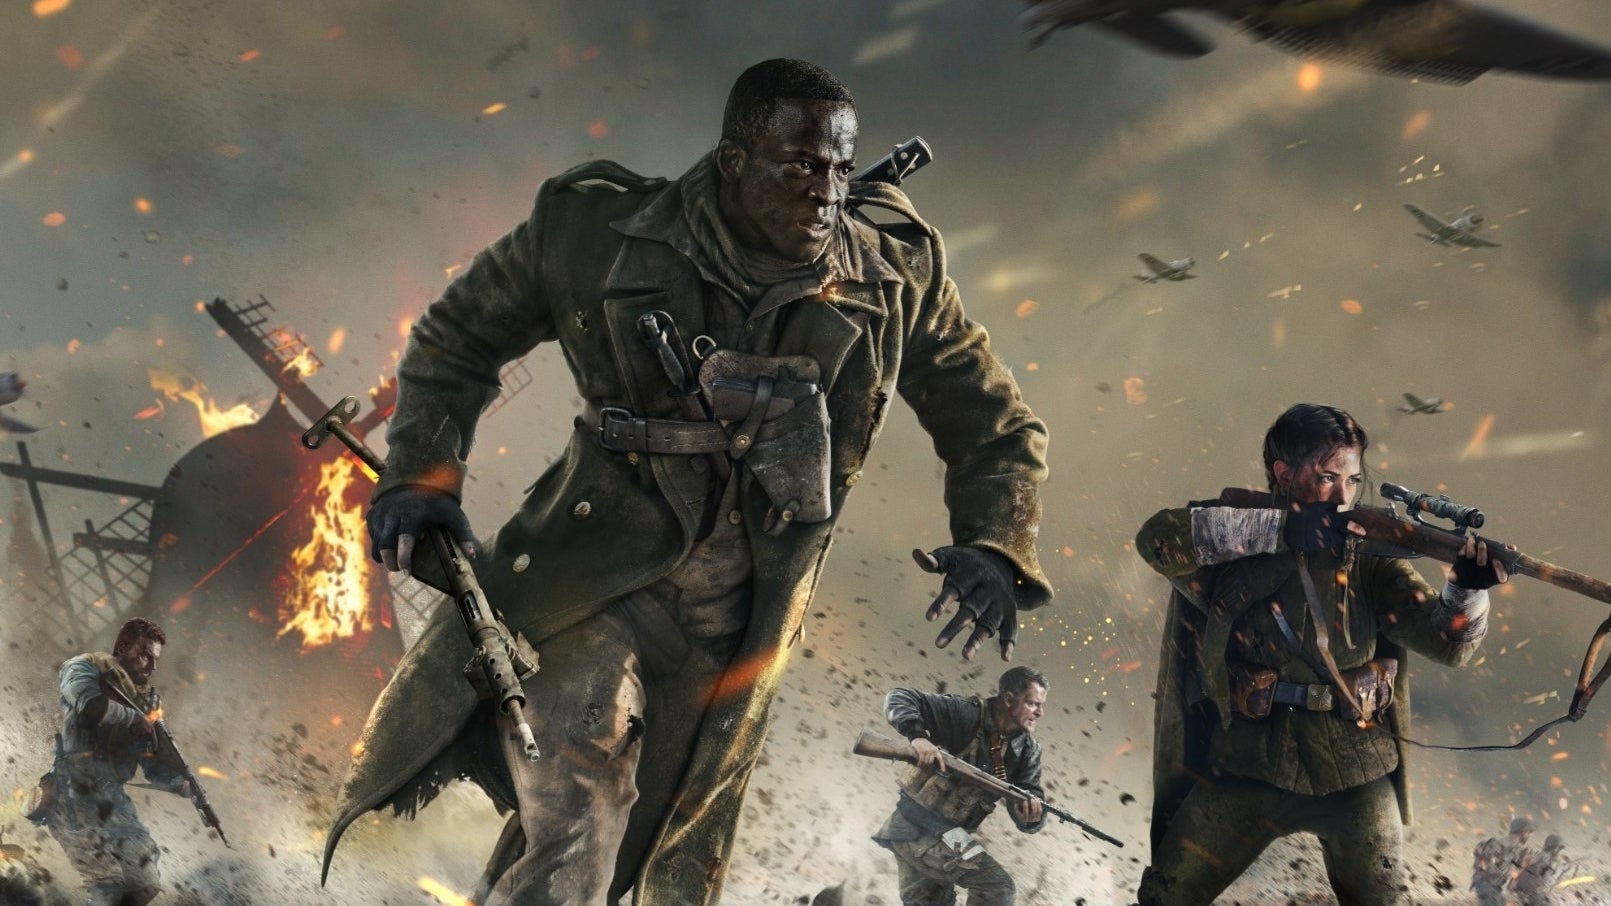 Imagen para Las ventas de Call of Duty en Reino Unido han caído un 40% respecto al año pasado